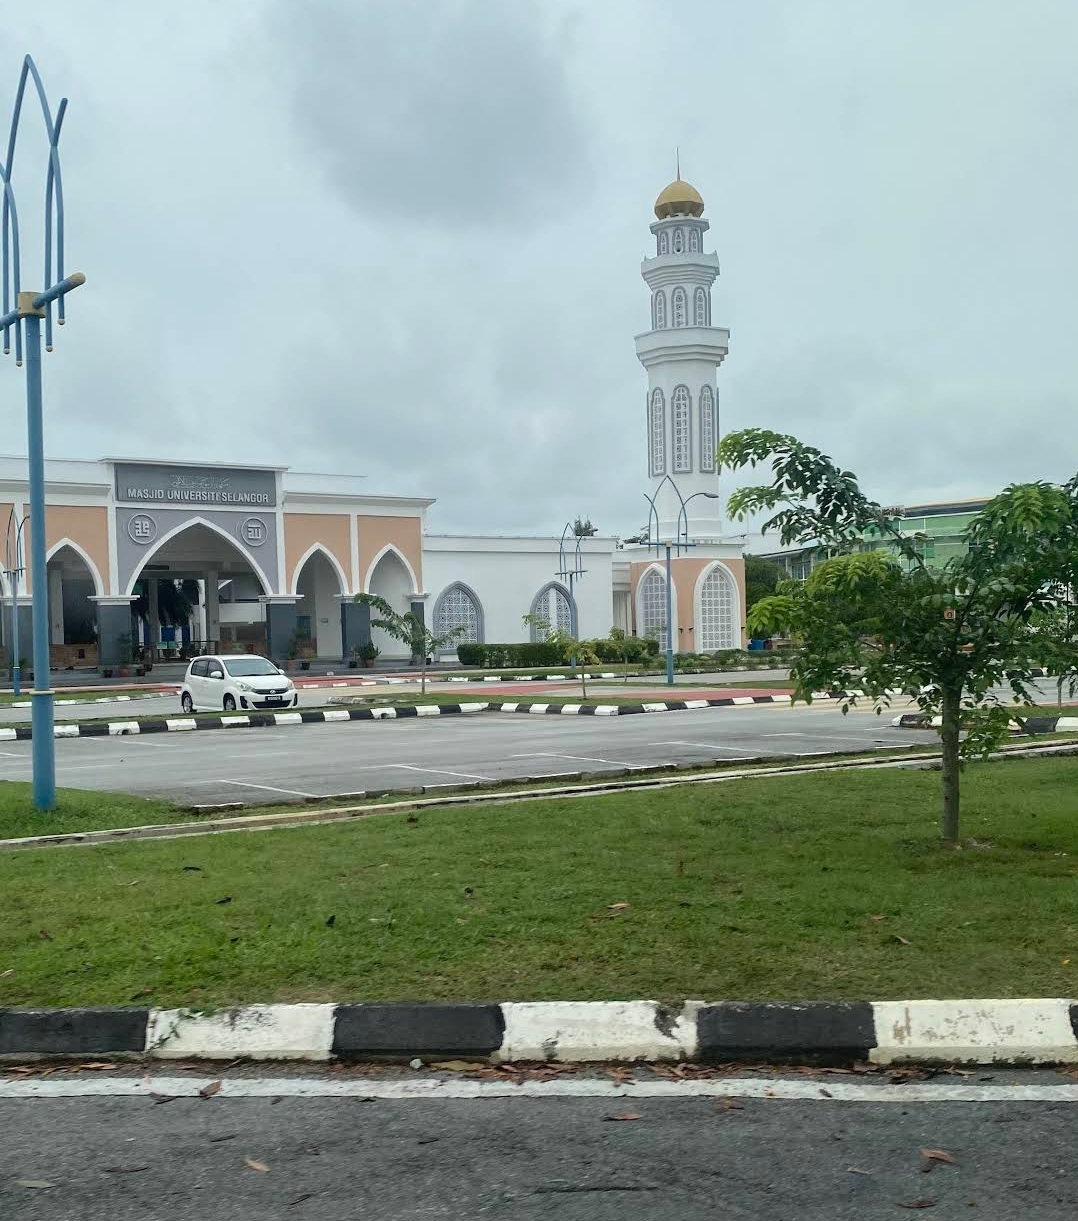 Masjid Unisel